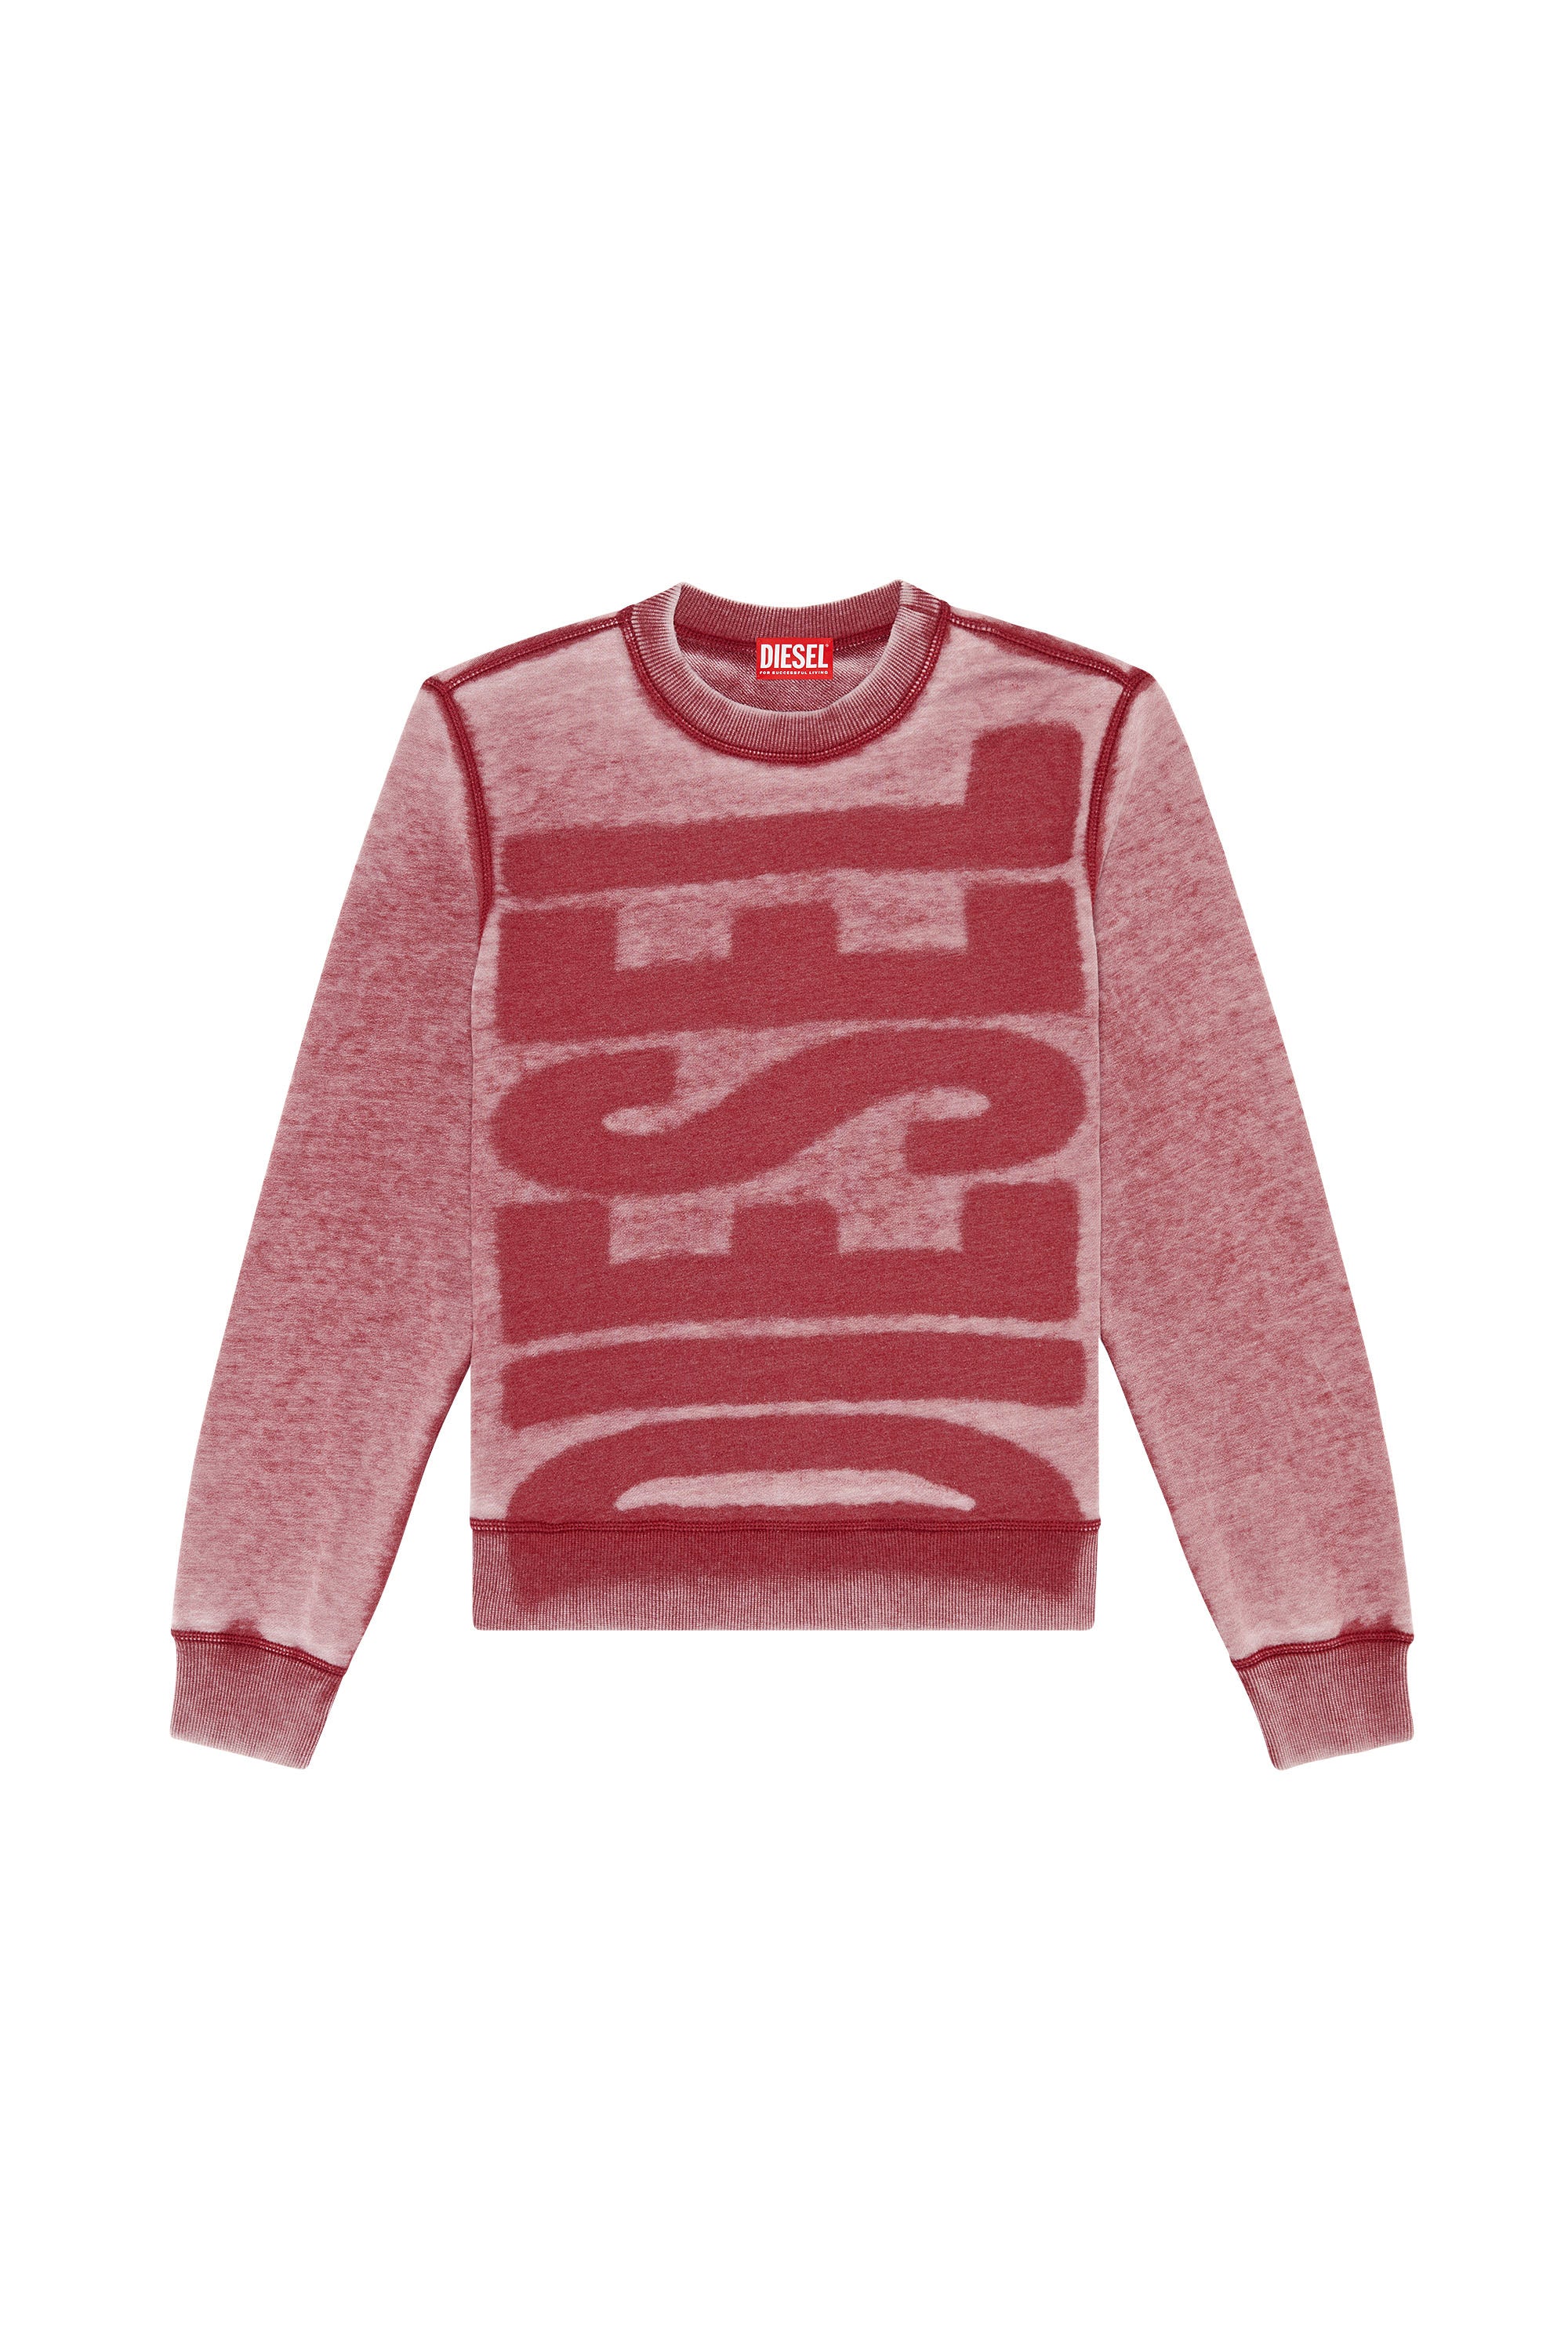 Diesel - S-Ginn-L1 Sweatshirt - Red